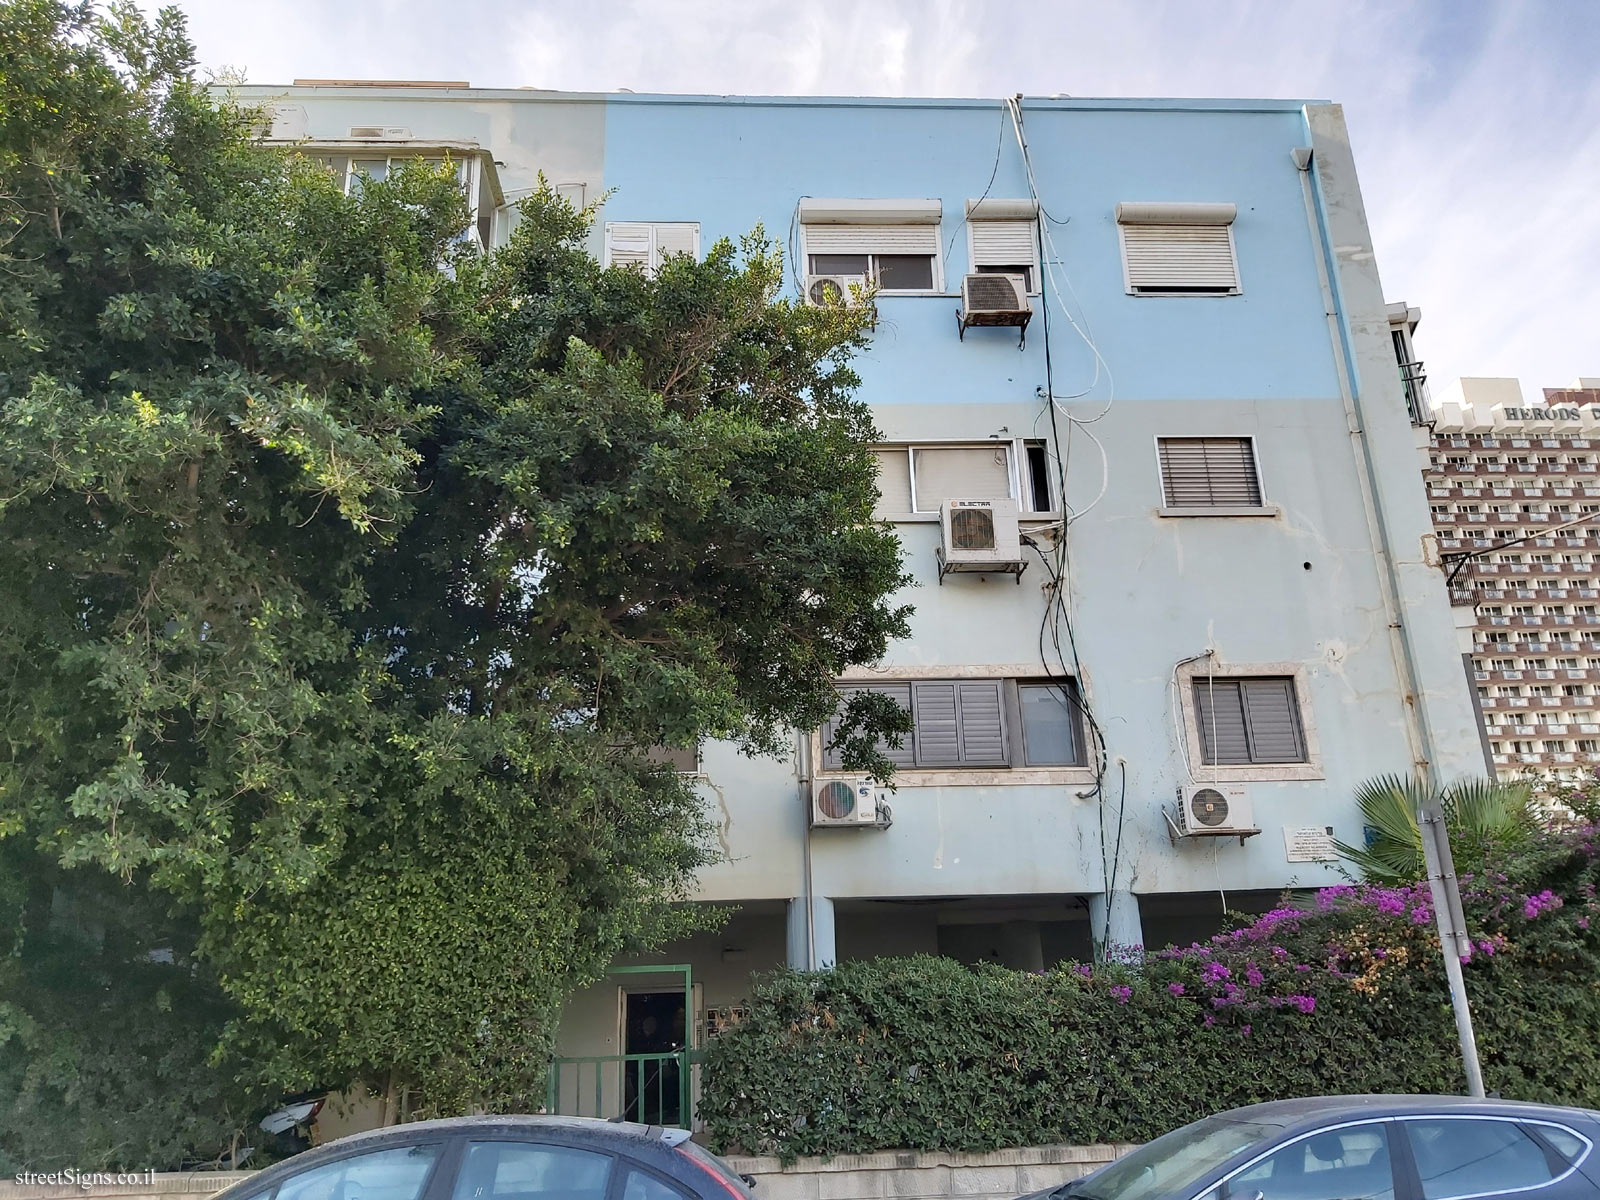 The house of Margot Kalusner - Sderot Ben Gurion 2, Tel Aviv-Yafo, Israel